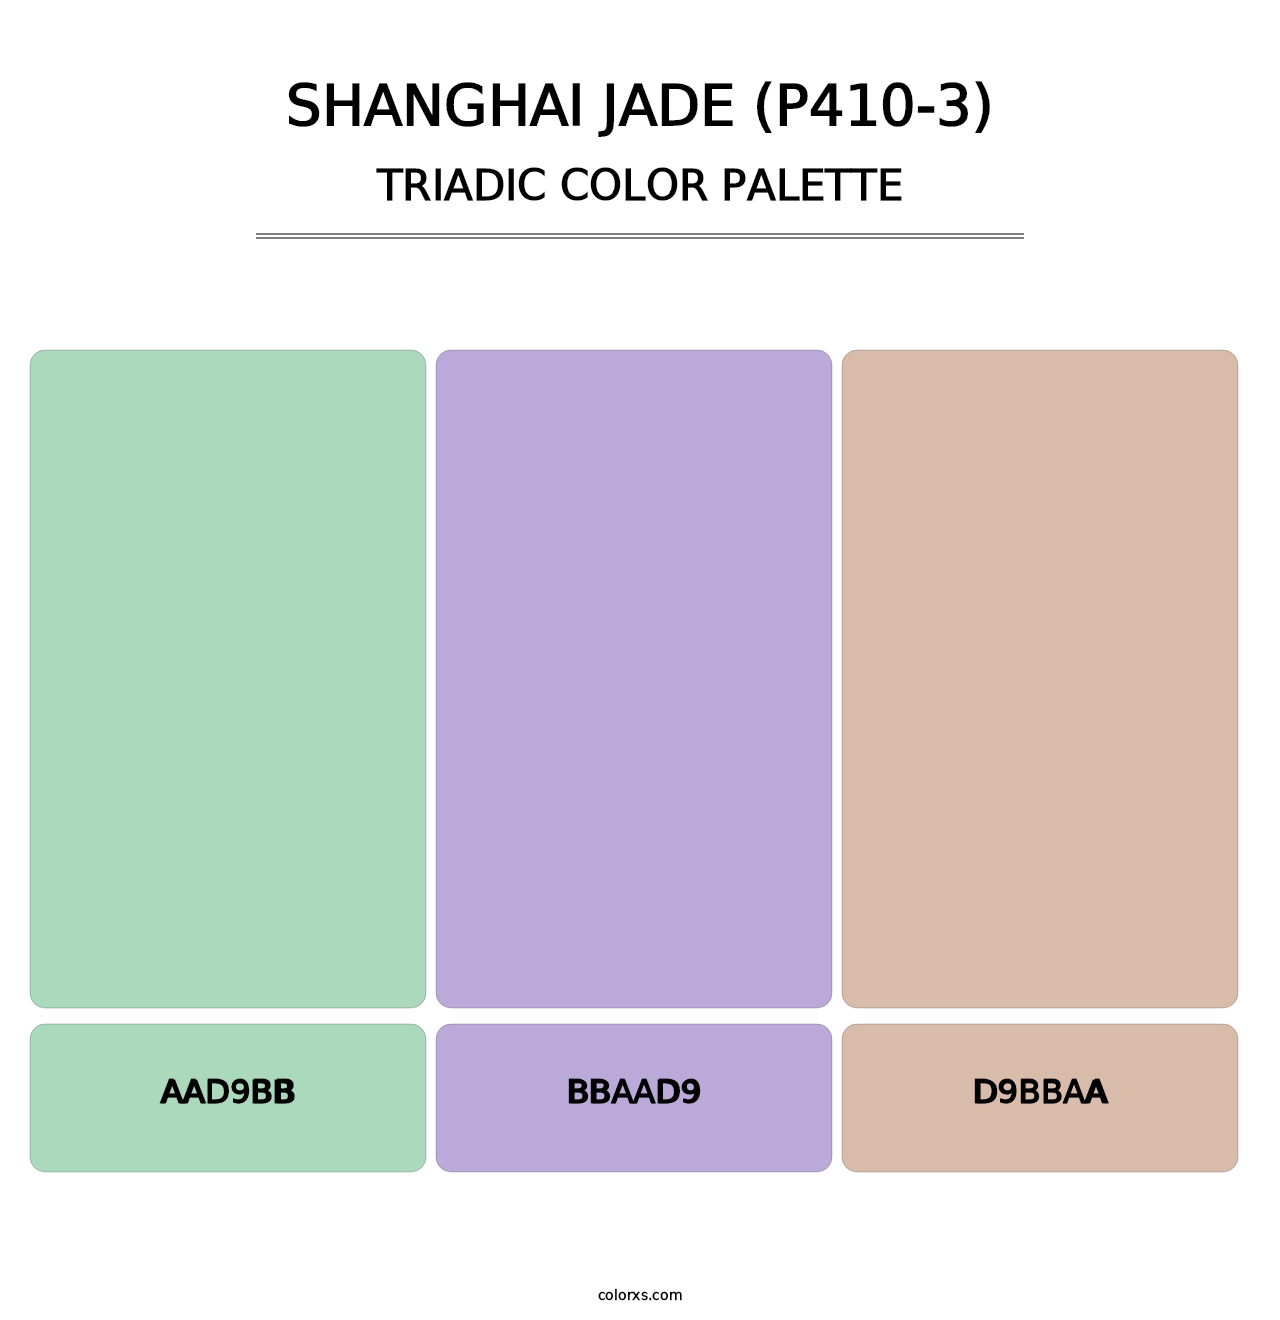 Shanghai Jade (P410-3) - Triadic Color Palette